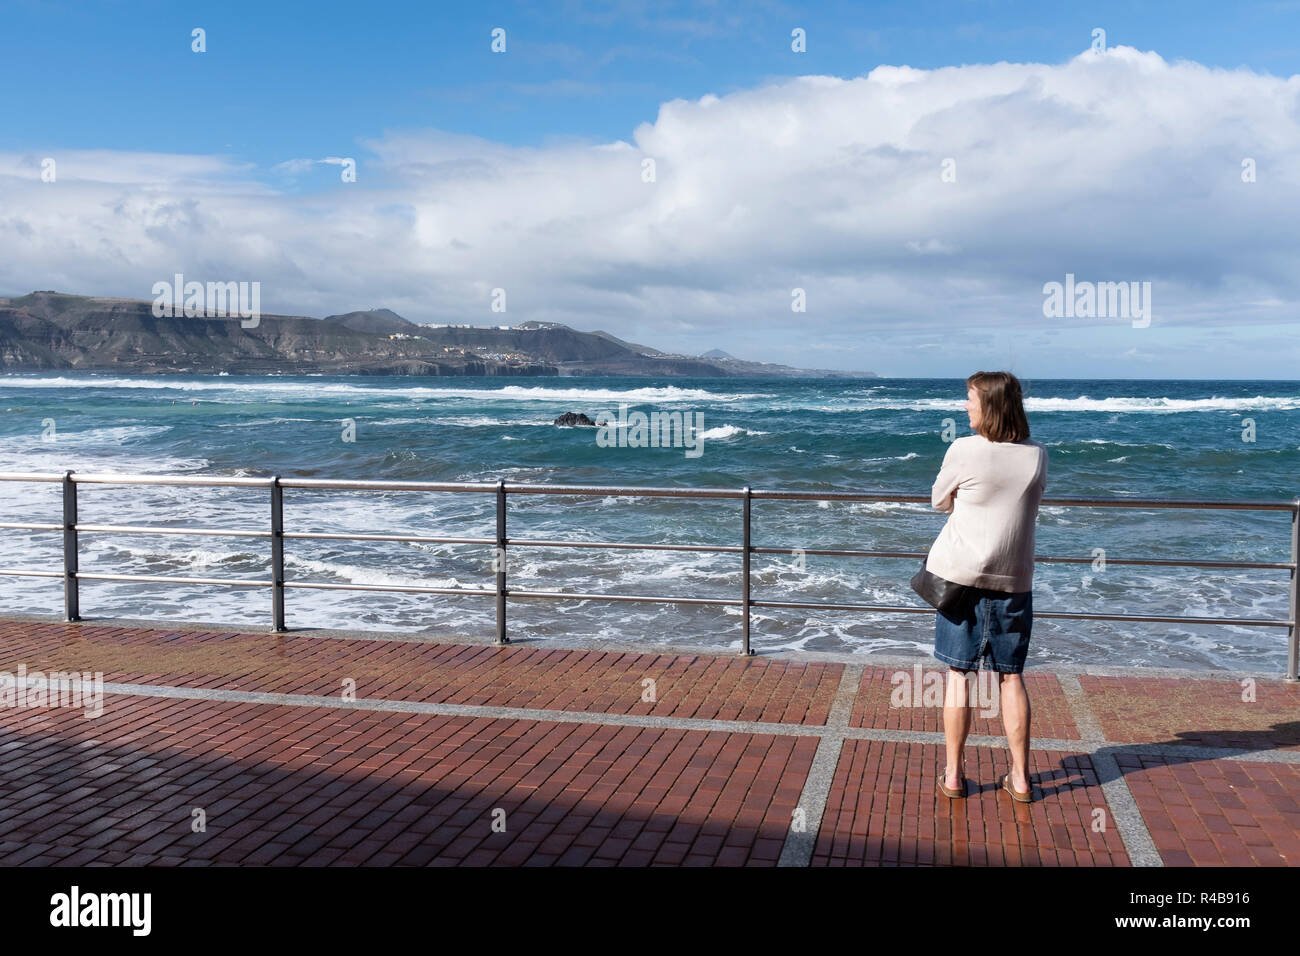 a woman enjoys the landscape of the beach of Las Canteras in LAs Palmas de gran Canaria, Spain. Stock Photo